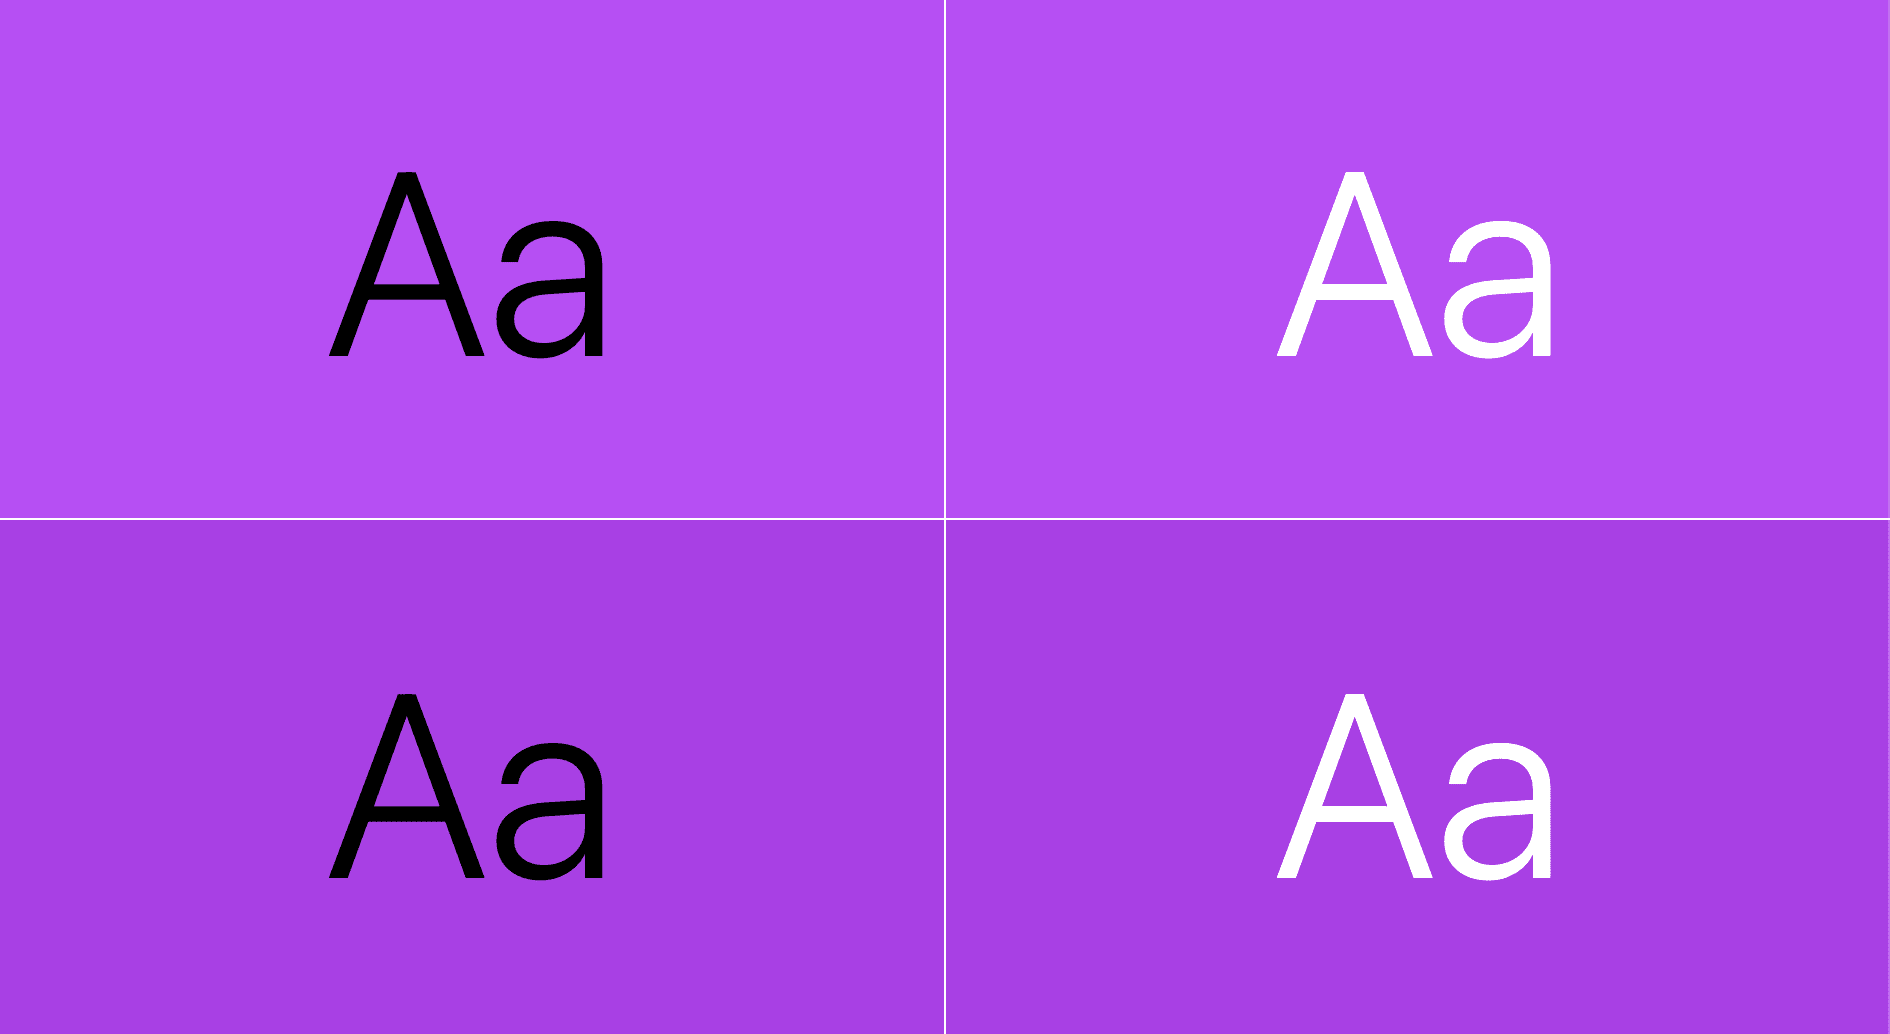 テキストは紫色で表示されます。1 つの組み合わせは、紫色の上に黒色の文字、もう 1 つの組み合わせは、紫色の上に白色の文字で表示されます。